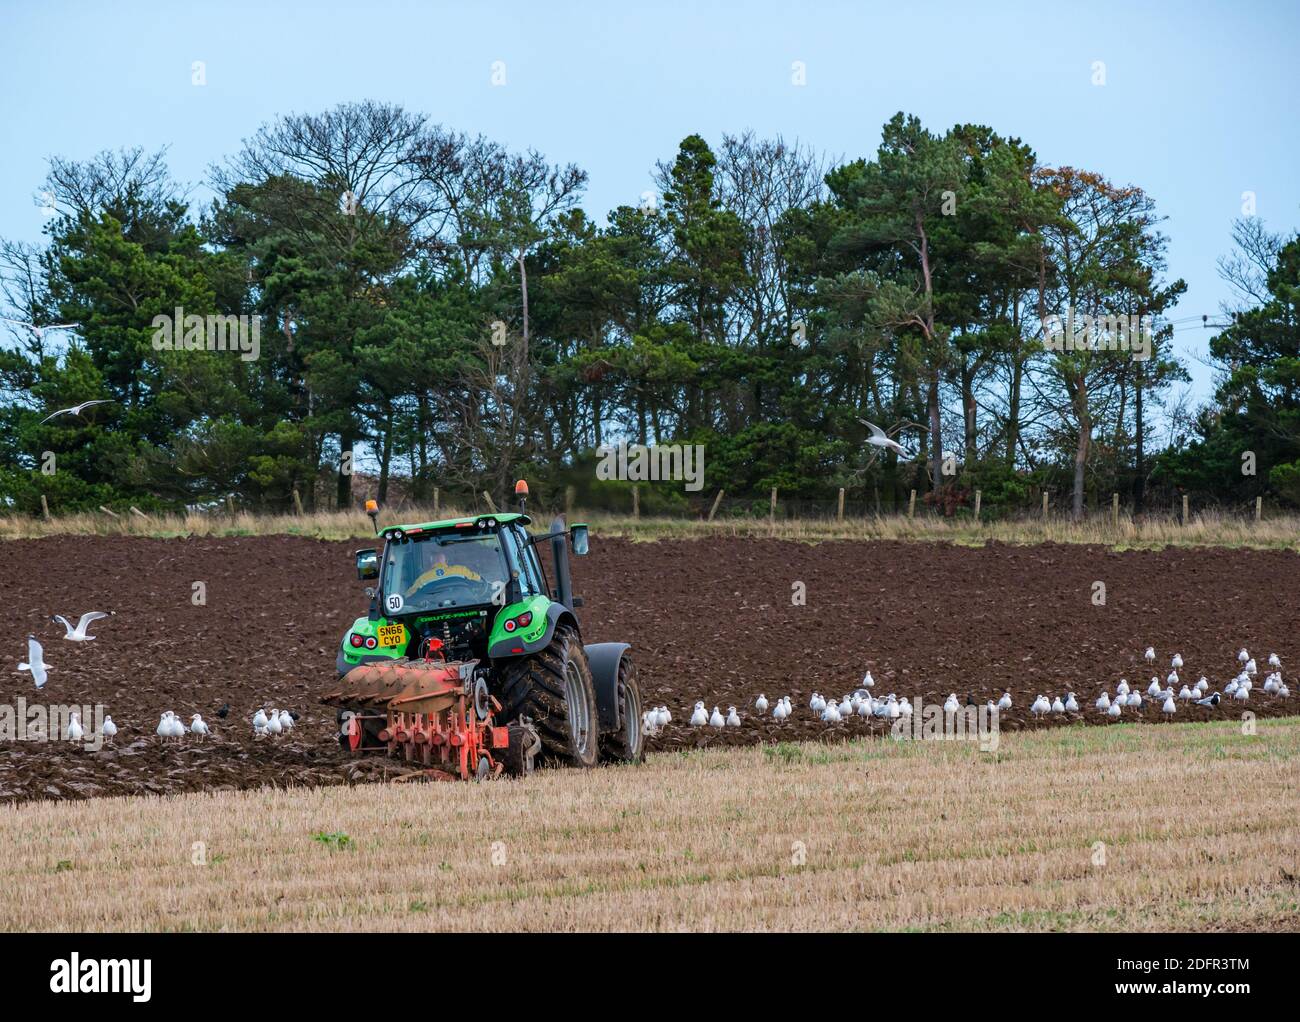 Trabajos agrícolas: Campo de arado de tractor Deutz-Fahr con gaviotas, East Lothian, Escocia, Reino Unido Foto de stock